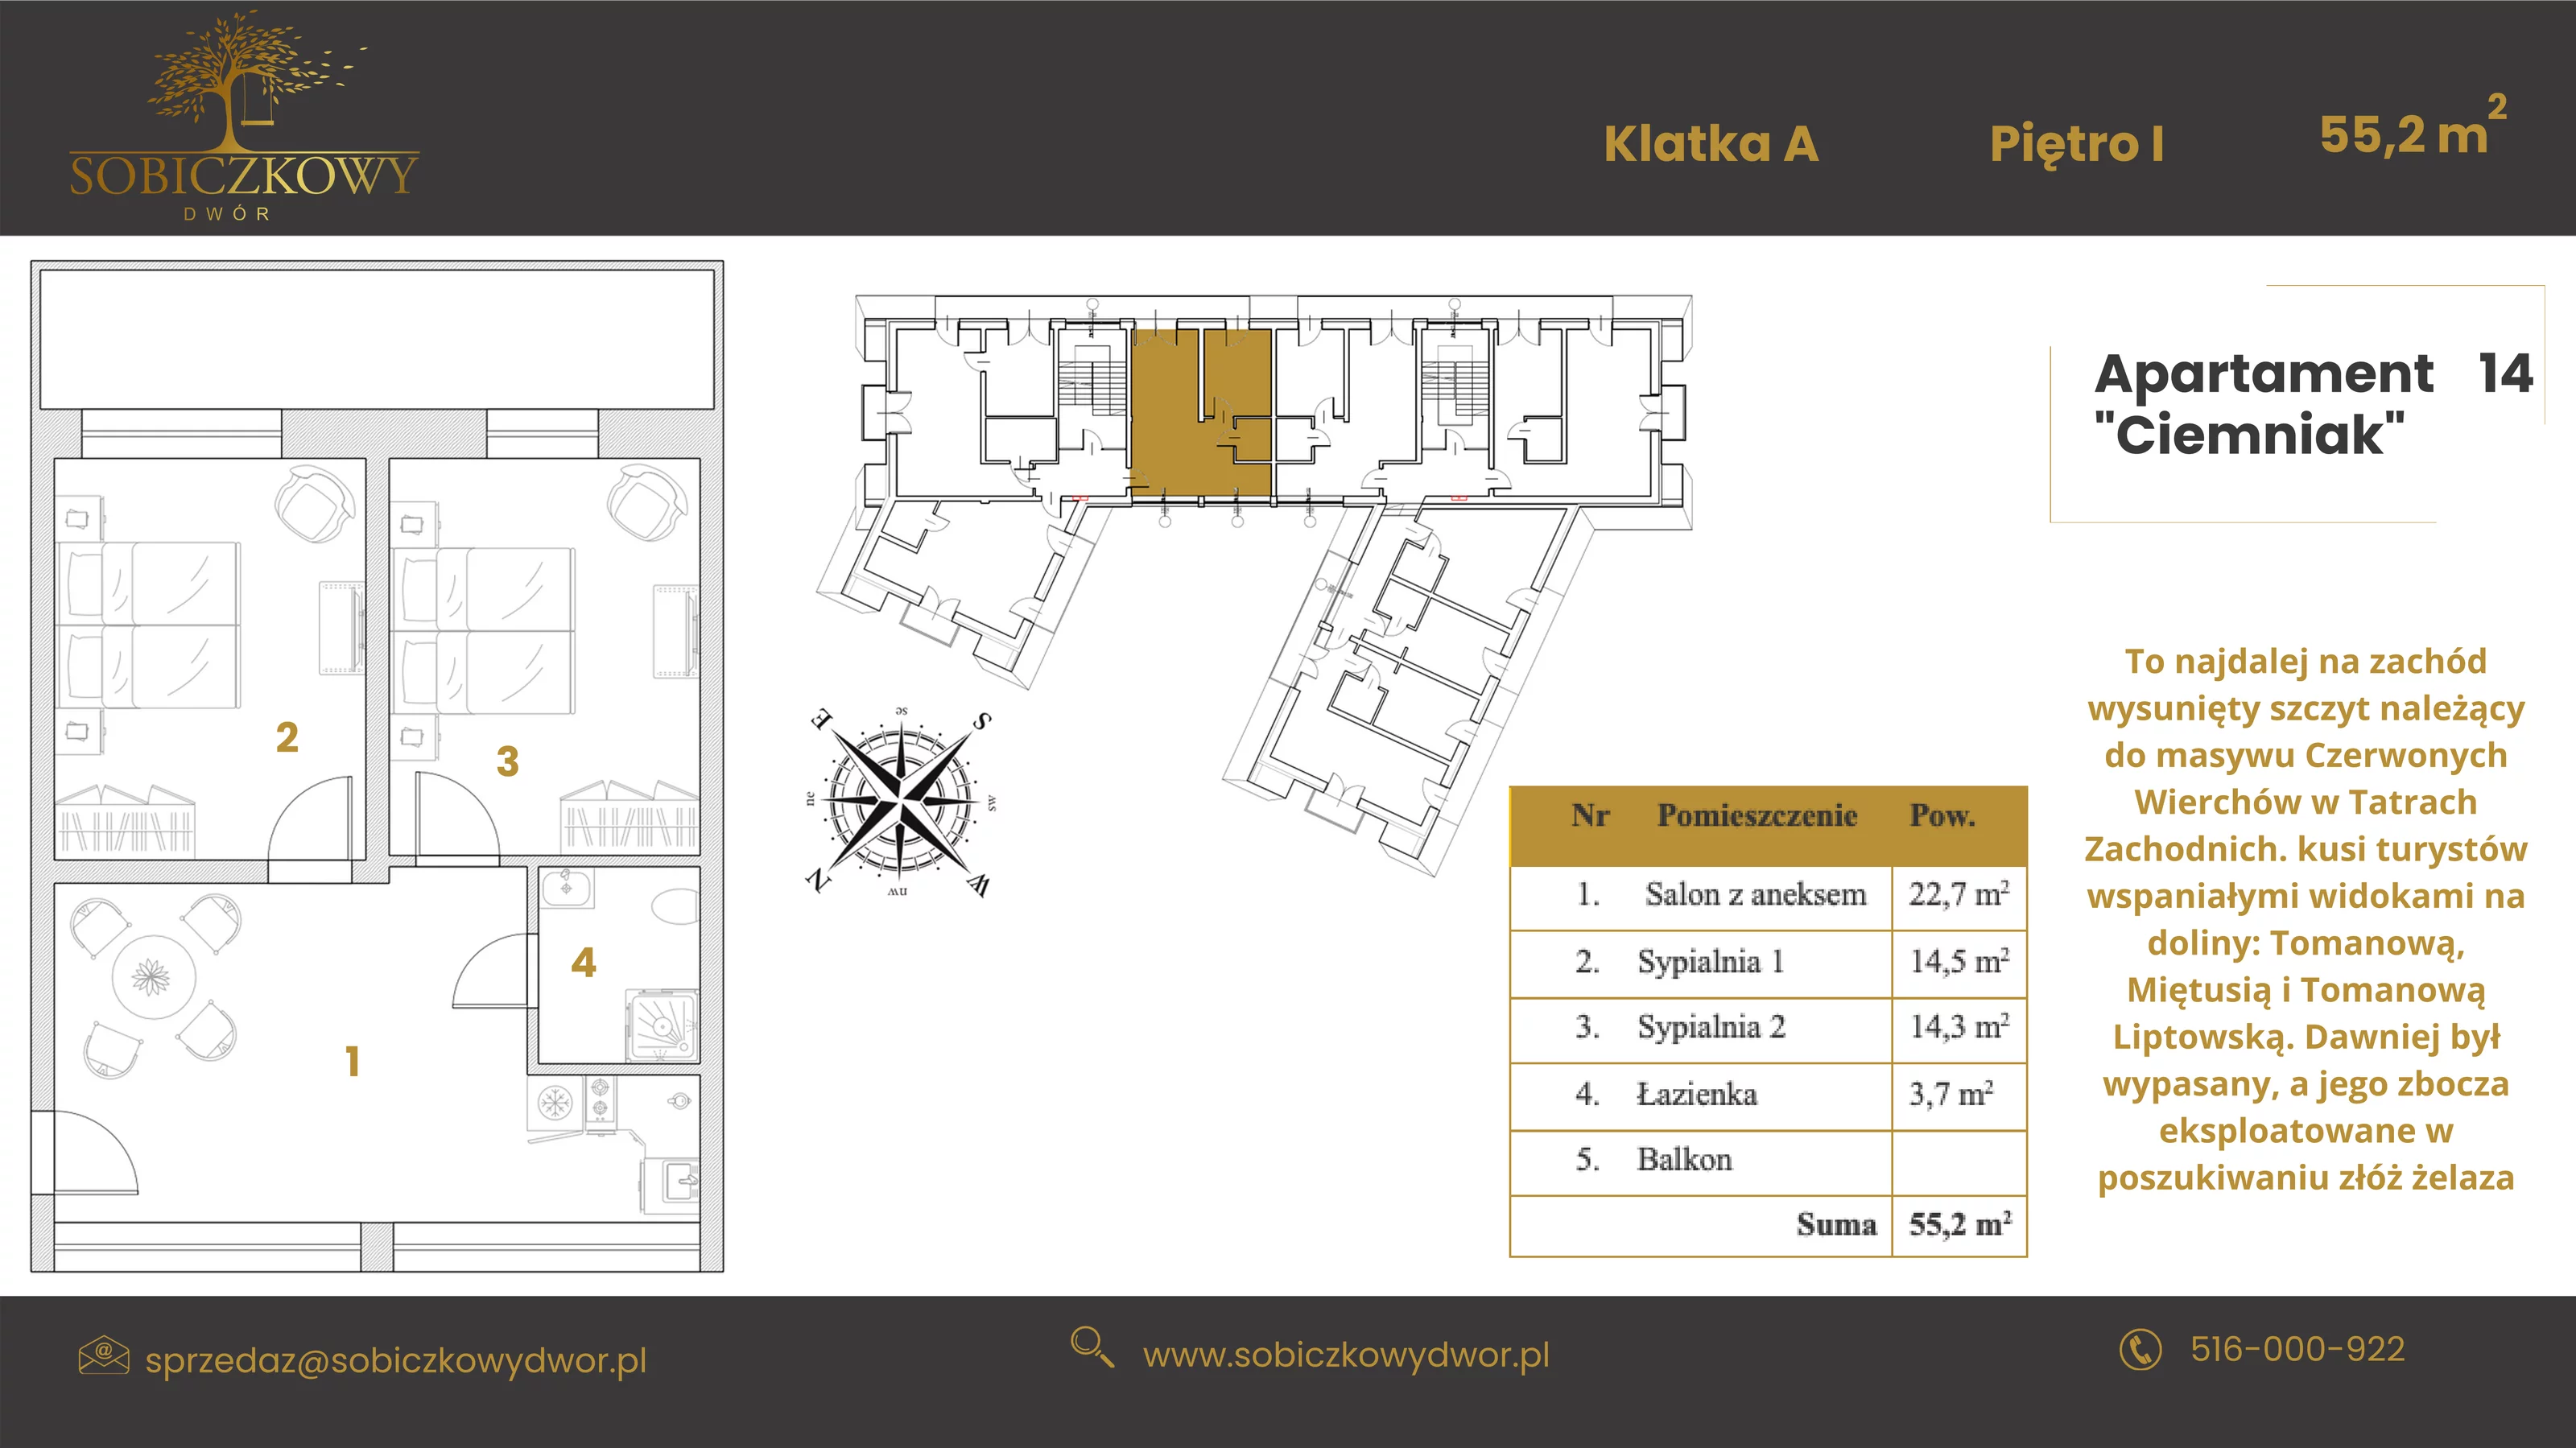 Apartament 55,20 m², piętro 1, oferta nr 14 "Ciemniak", Sobiczkowy Dwór, Kościelisko, ul. Sobiczkowa Bór 1